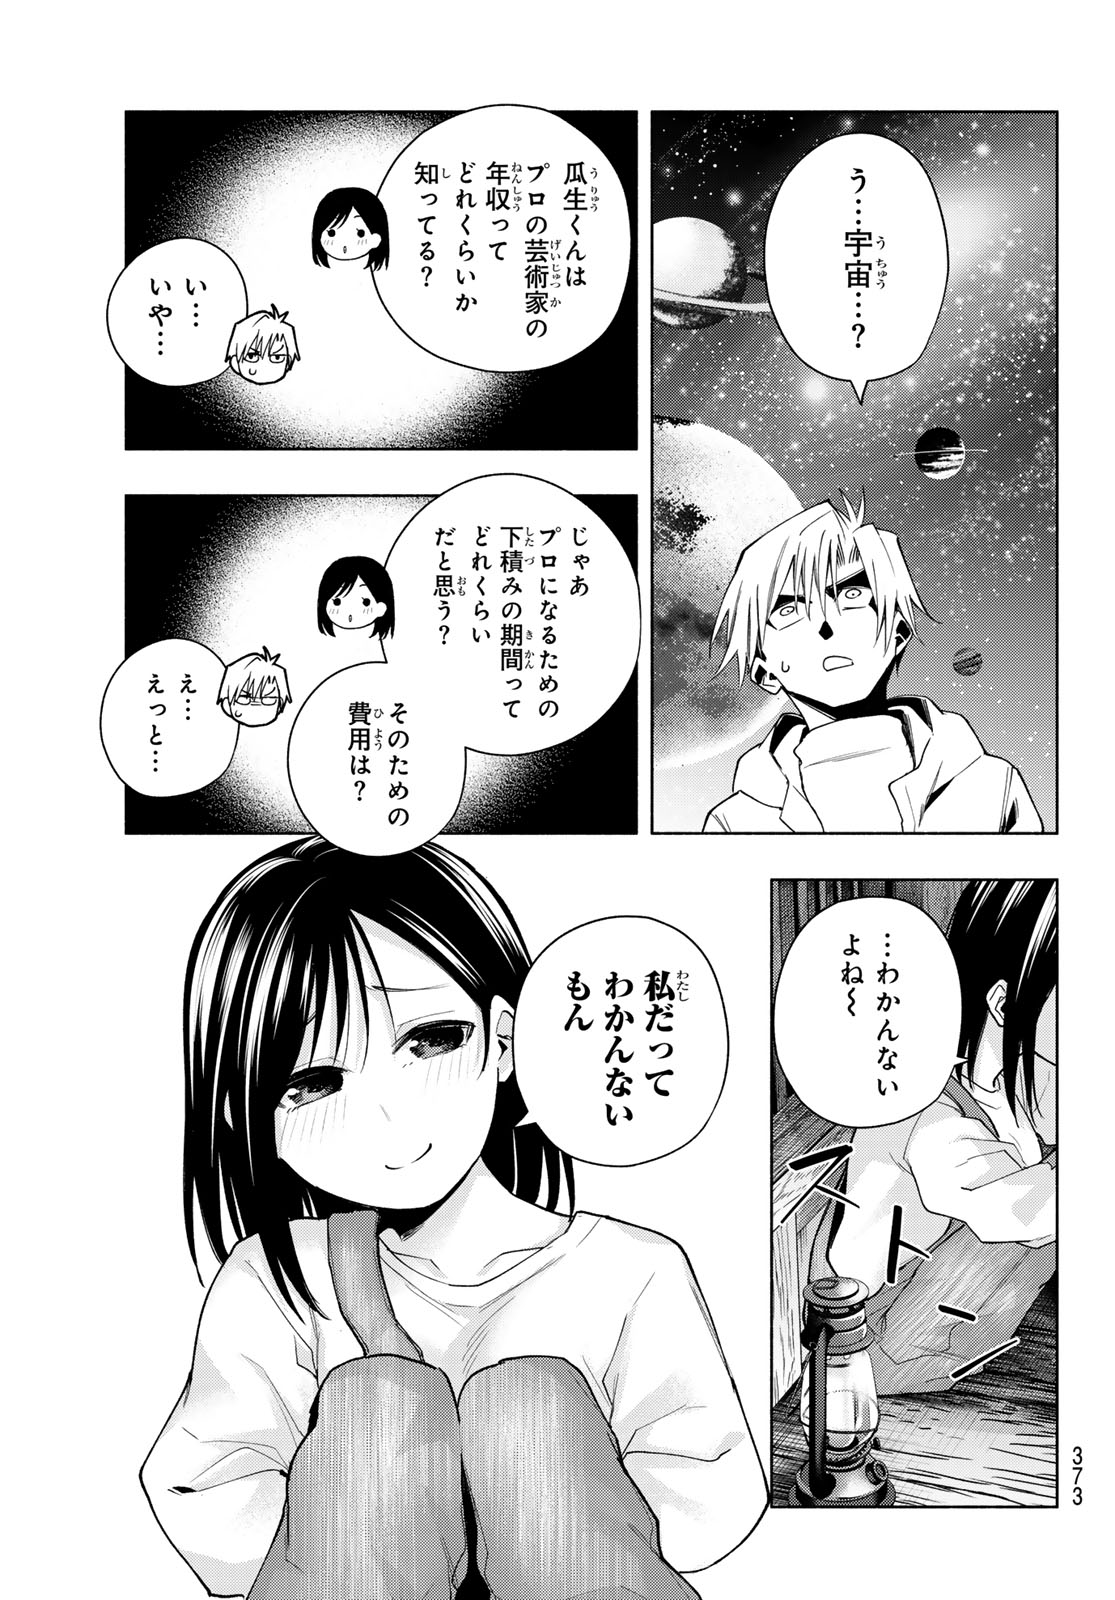 Amagami-san Chi no Enmusubi - Chapter 139 - Page 15